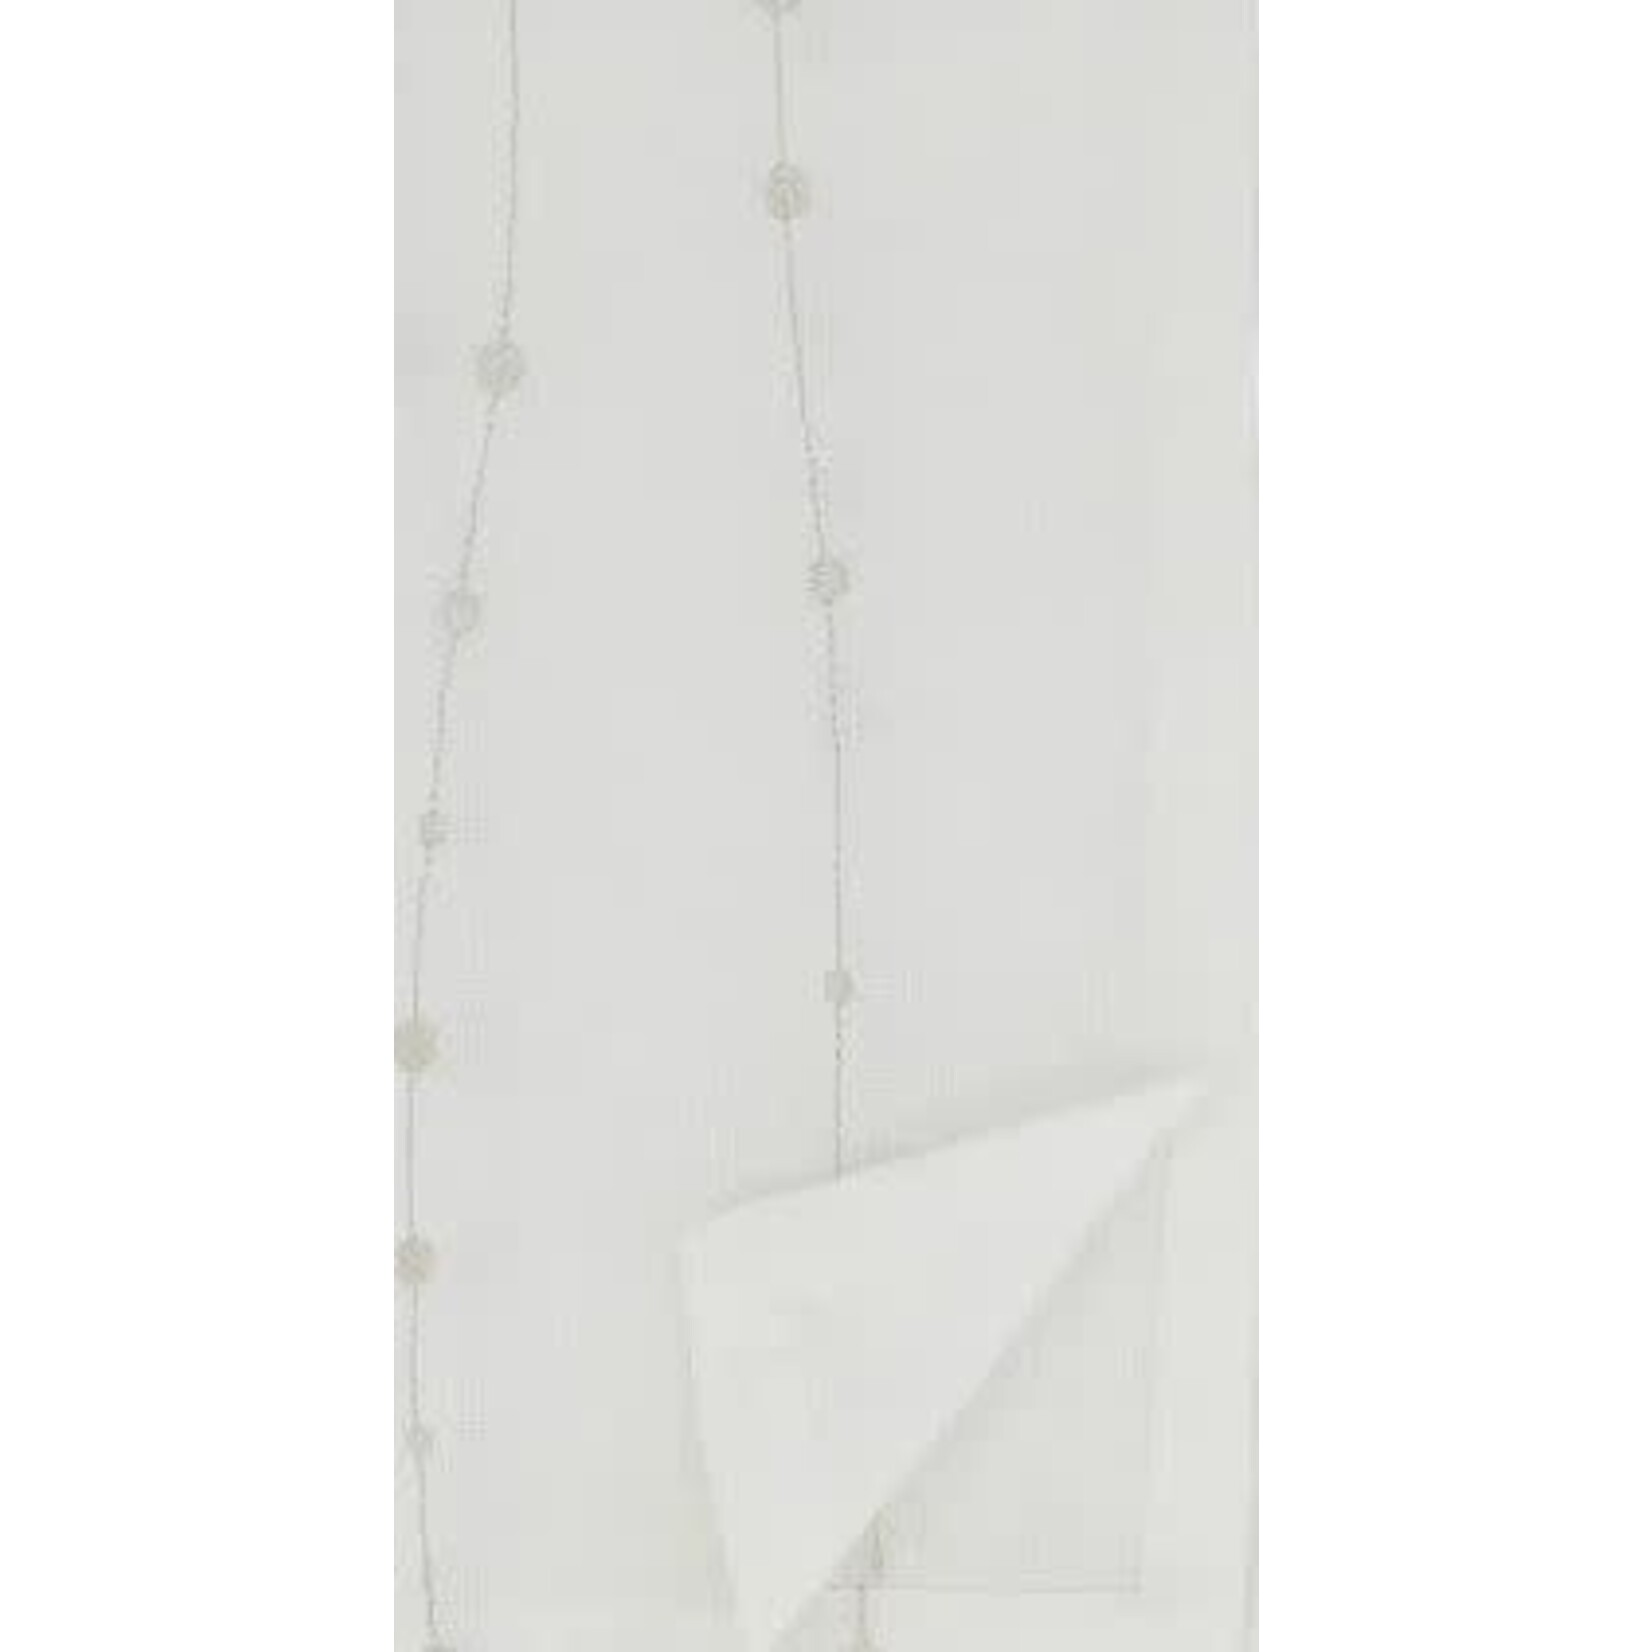 Saro Trading Company Embroidered Design Napkin Silver White